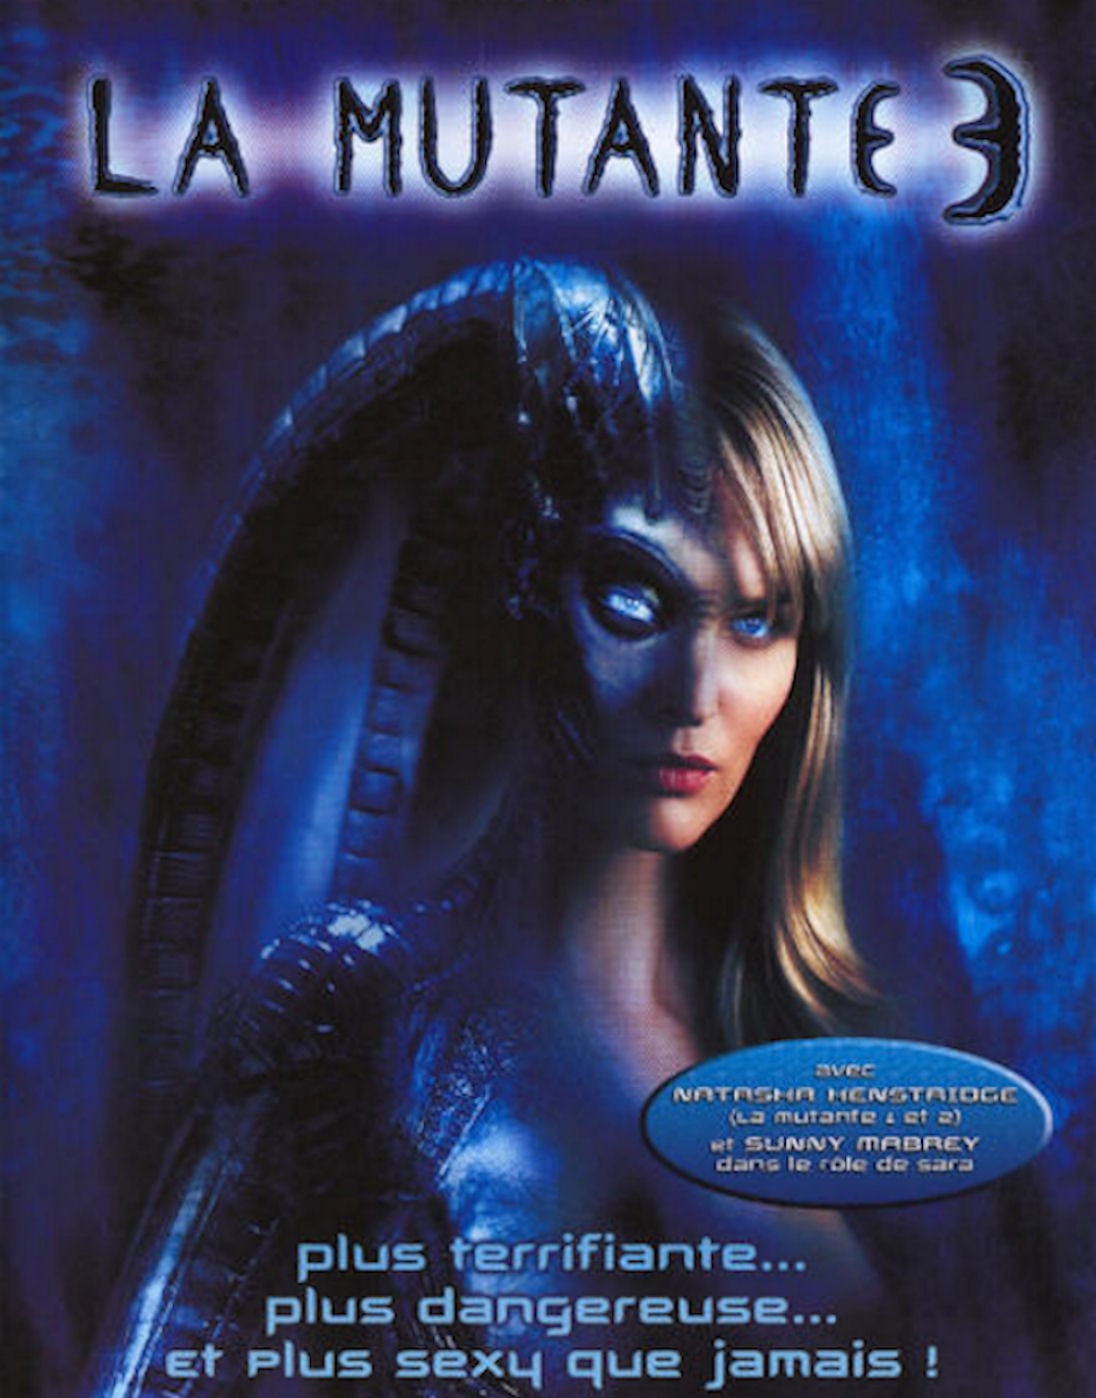 Affiche du film "La Mutante 3"